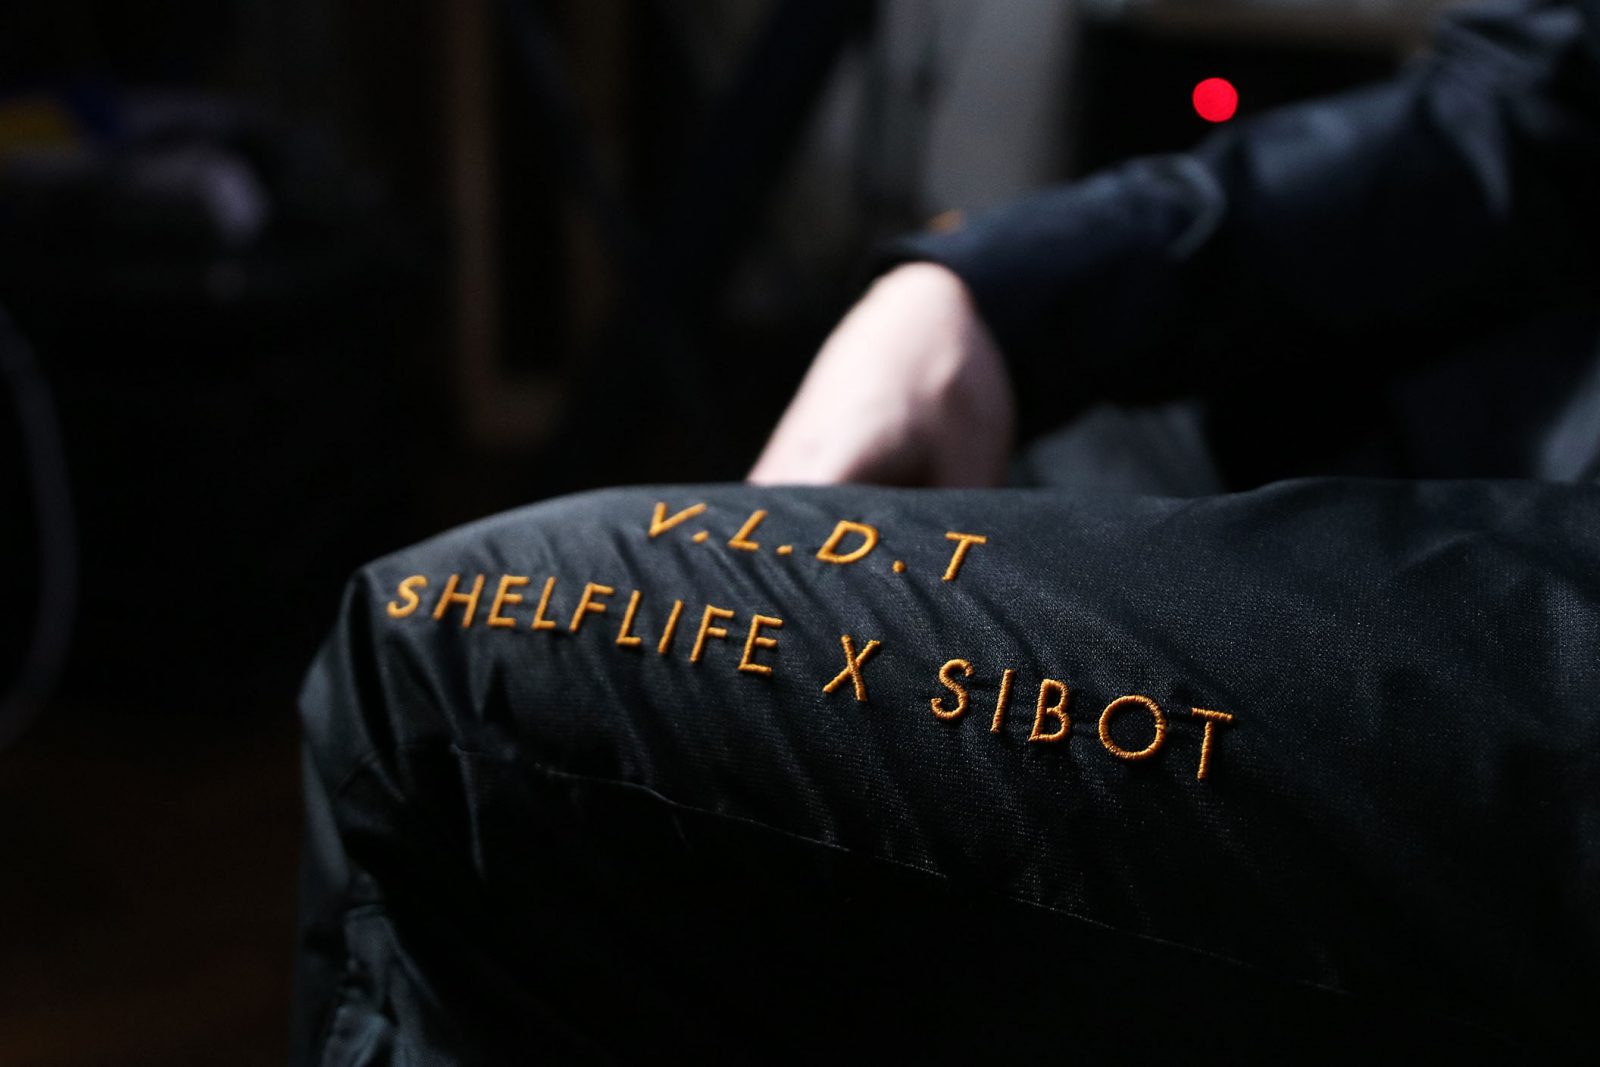 Shelflife x Sibot shoot